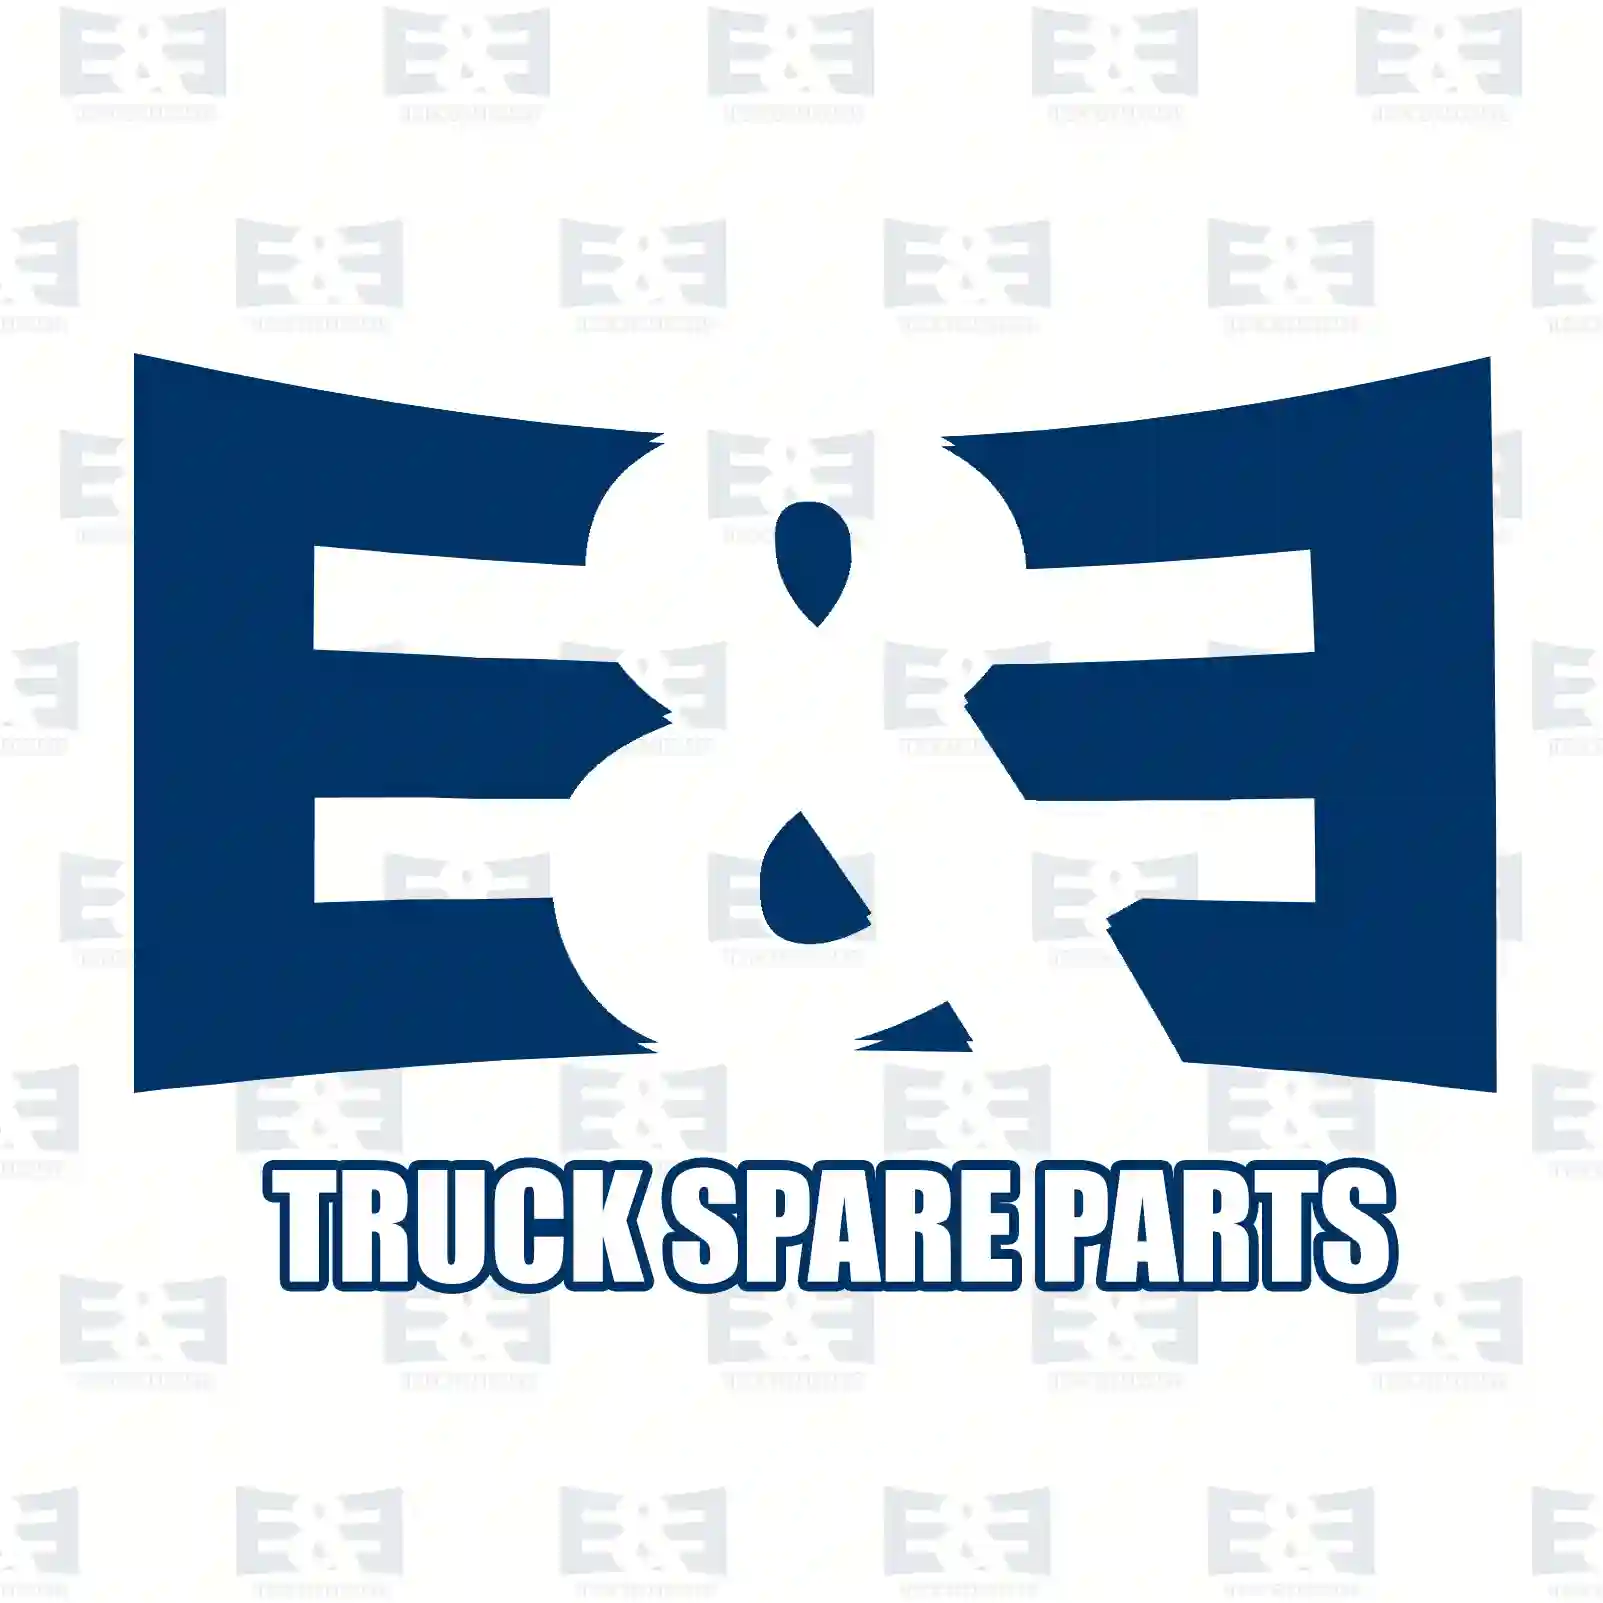 Hollow spring, 2E2283506, 7422561479, 22561 ||  2E2283506 E&E Truck Spare Parts | Truck Spare Parts, Auotomotive Spare Parts Hollow spring, 2E2283506, 7422561479, 22561 ||  2E2283506 E&E Truck Spare Parts | Truck Spare Parts, Auotomotive Spare Parts